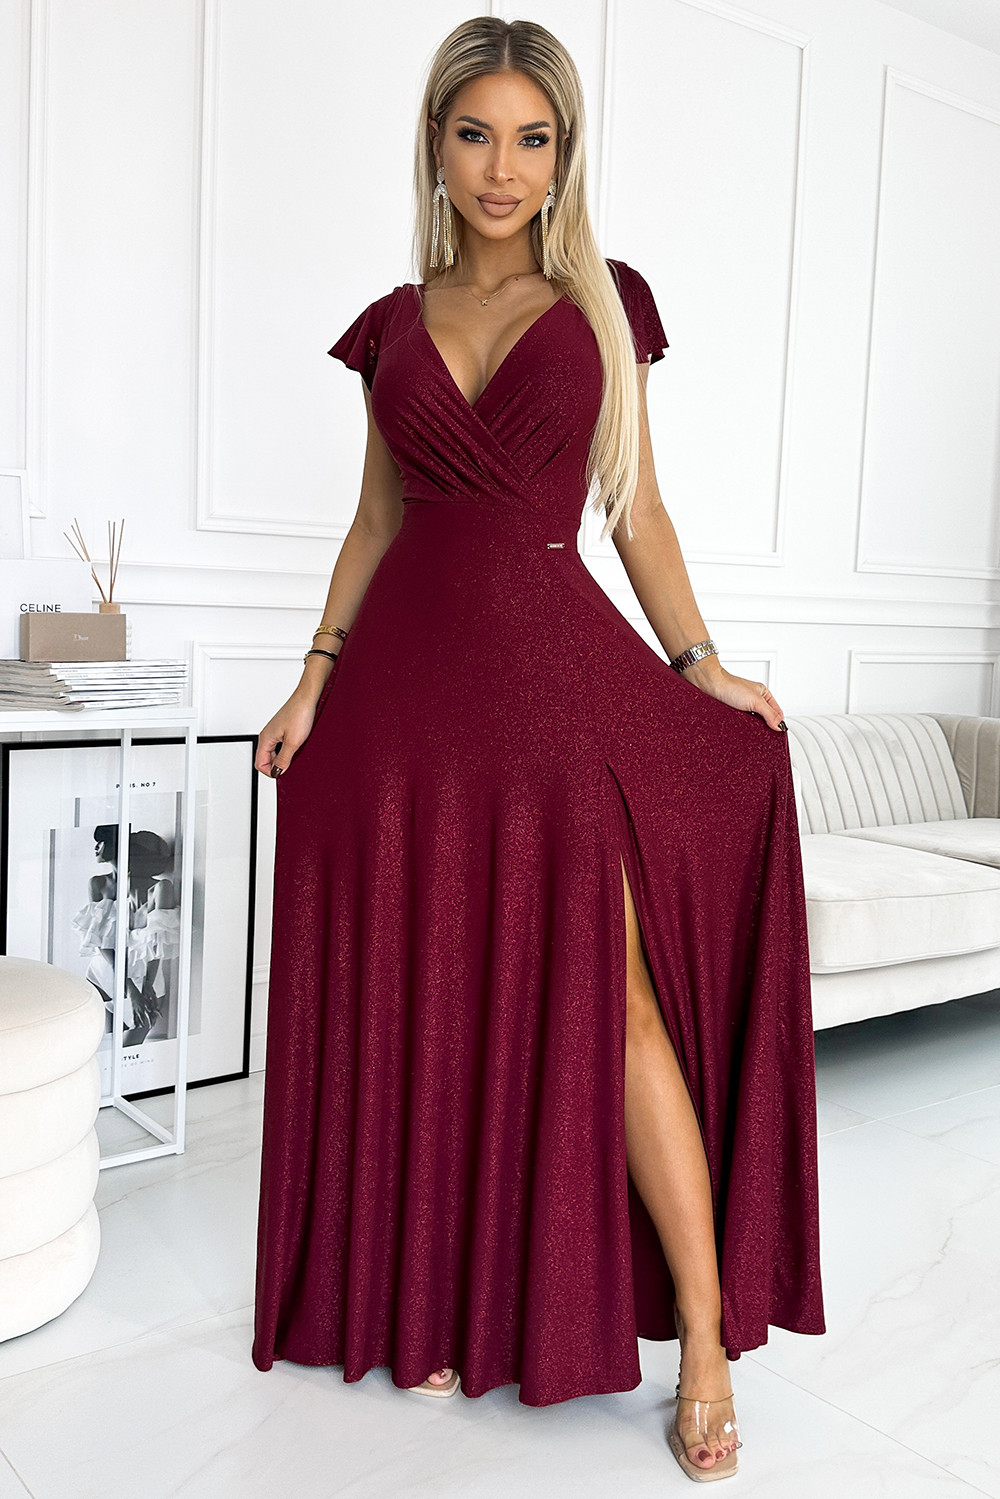 CRYSTAL - Dlouhé lesklé dámské šaty ve vínové bordó barvě s výstřihem 411-8 M